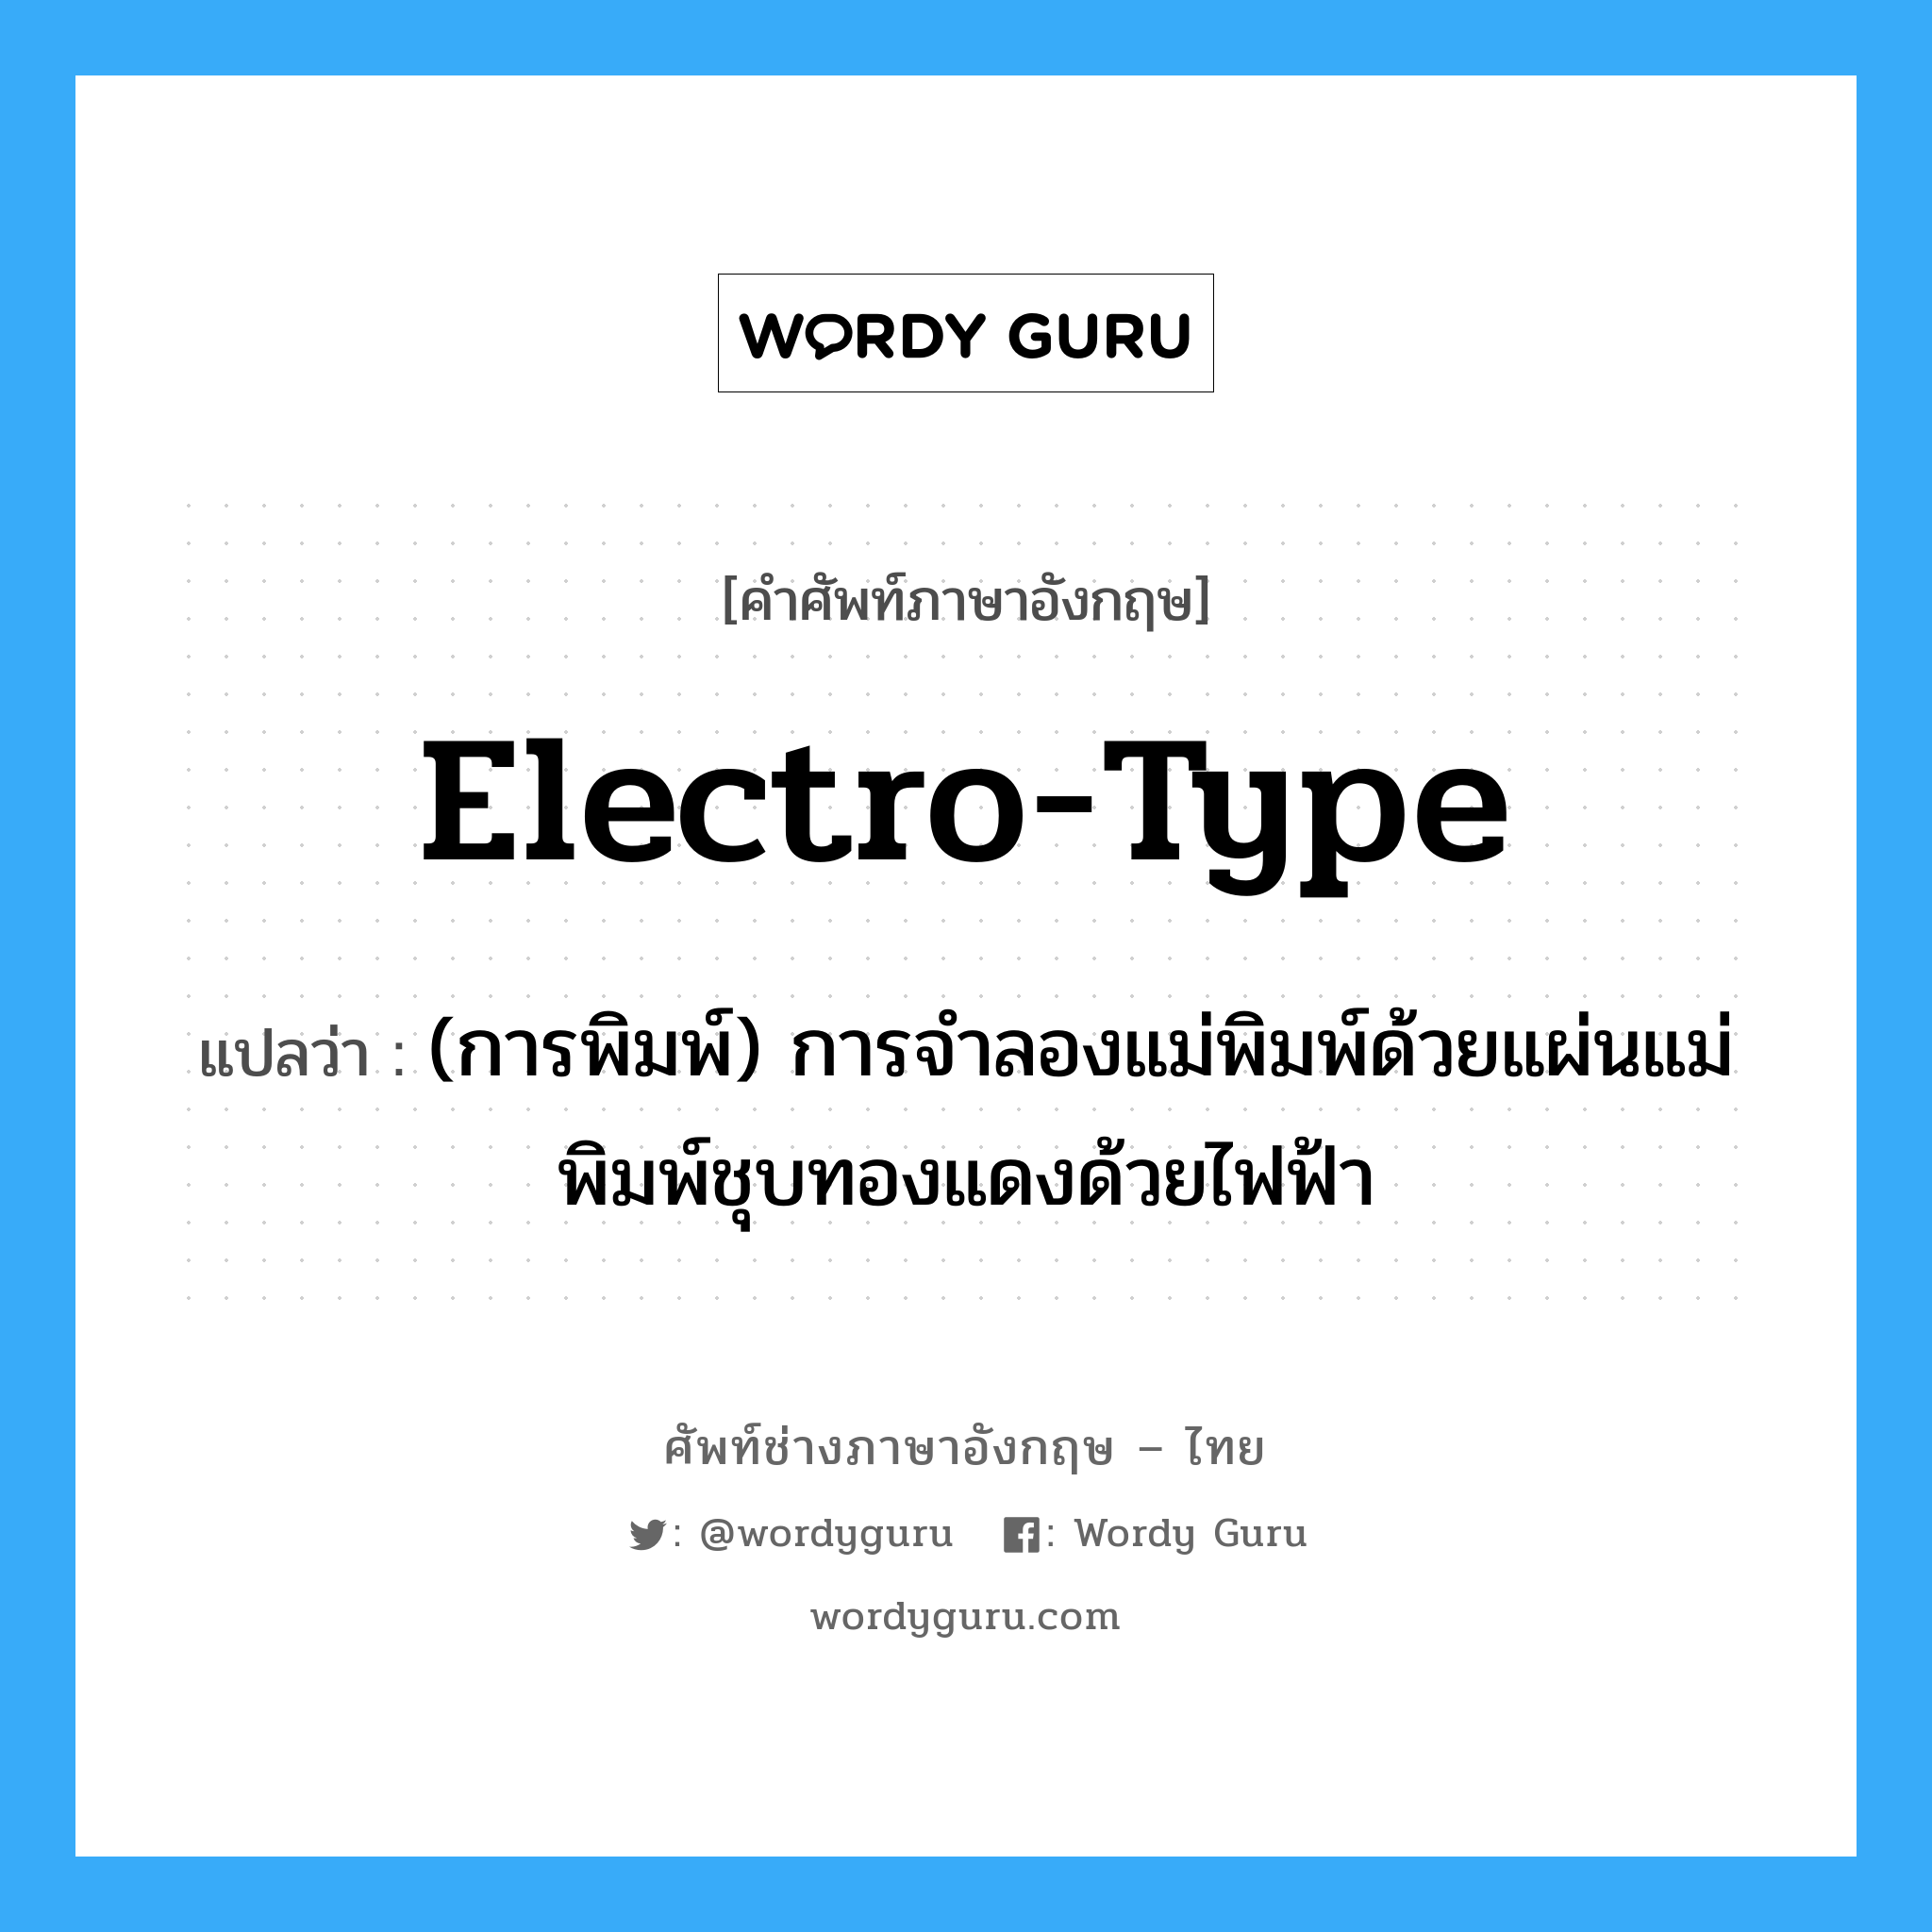 electro-type แปลว่า?, คำศัพท์ช่างภาษาอังกฤษ - ไทย electro-type คำศัพท์ภาษาอังกฤษ electro-type แปลว่า (การพิมพ์) การจำลองแม่พิมพ์ด้วยแผ่นแม่พิมพ์ชุบทองแดงด้วยไฟฟ้า